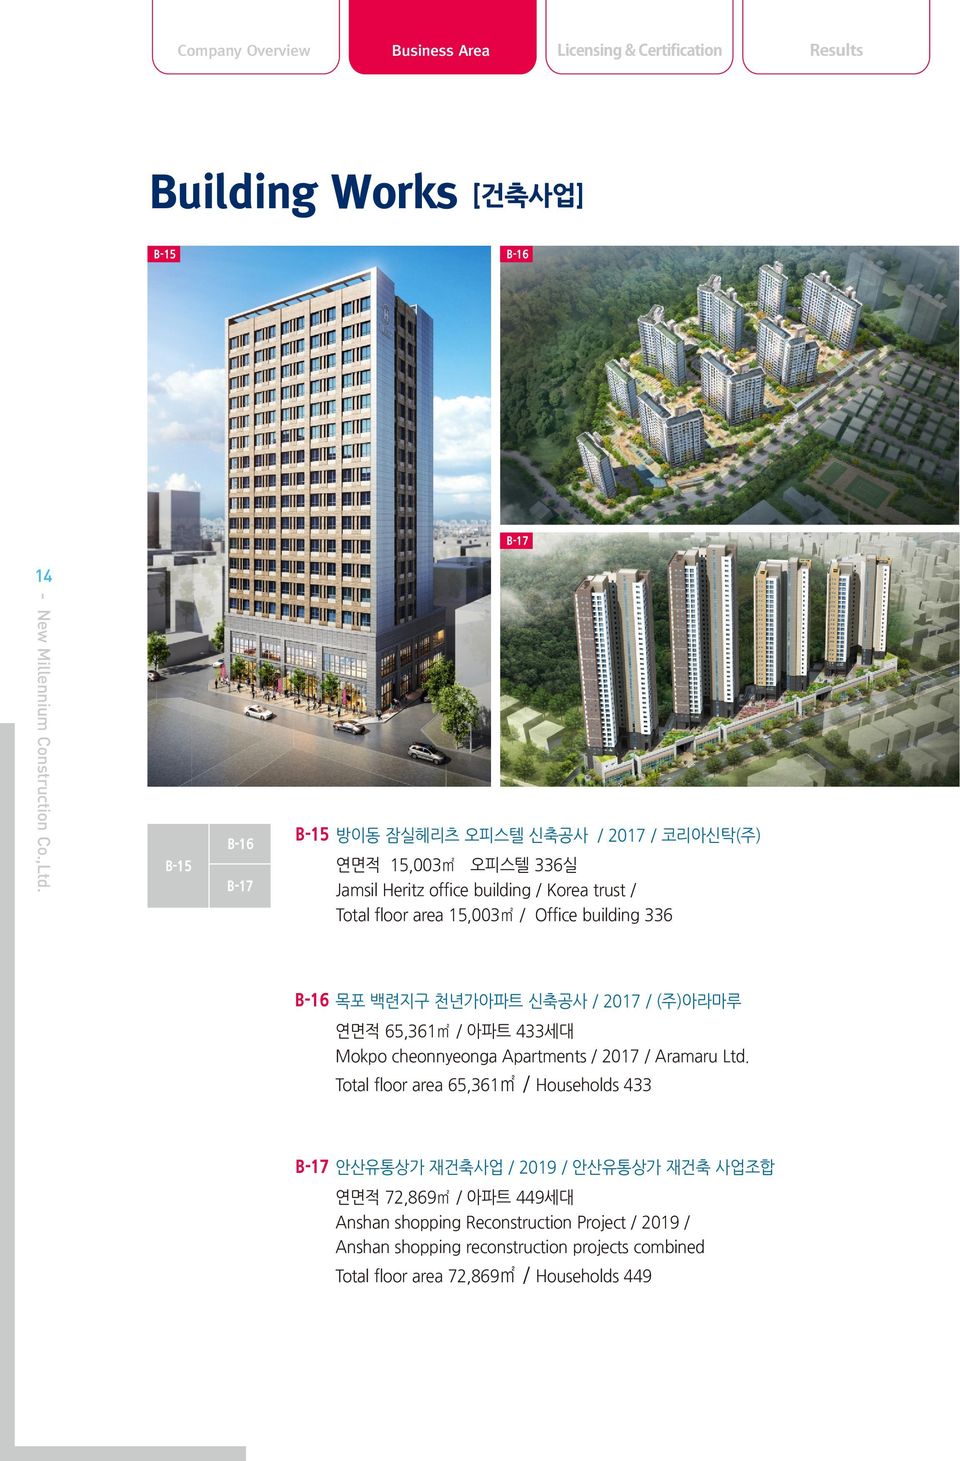 433세대 Mokpo cheonnyeonga Apartments / 2017 / Aramaru Ltd.